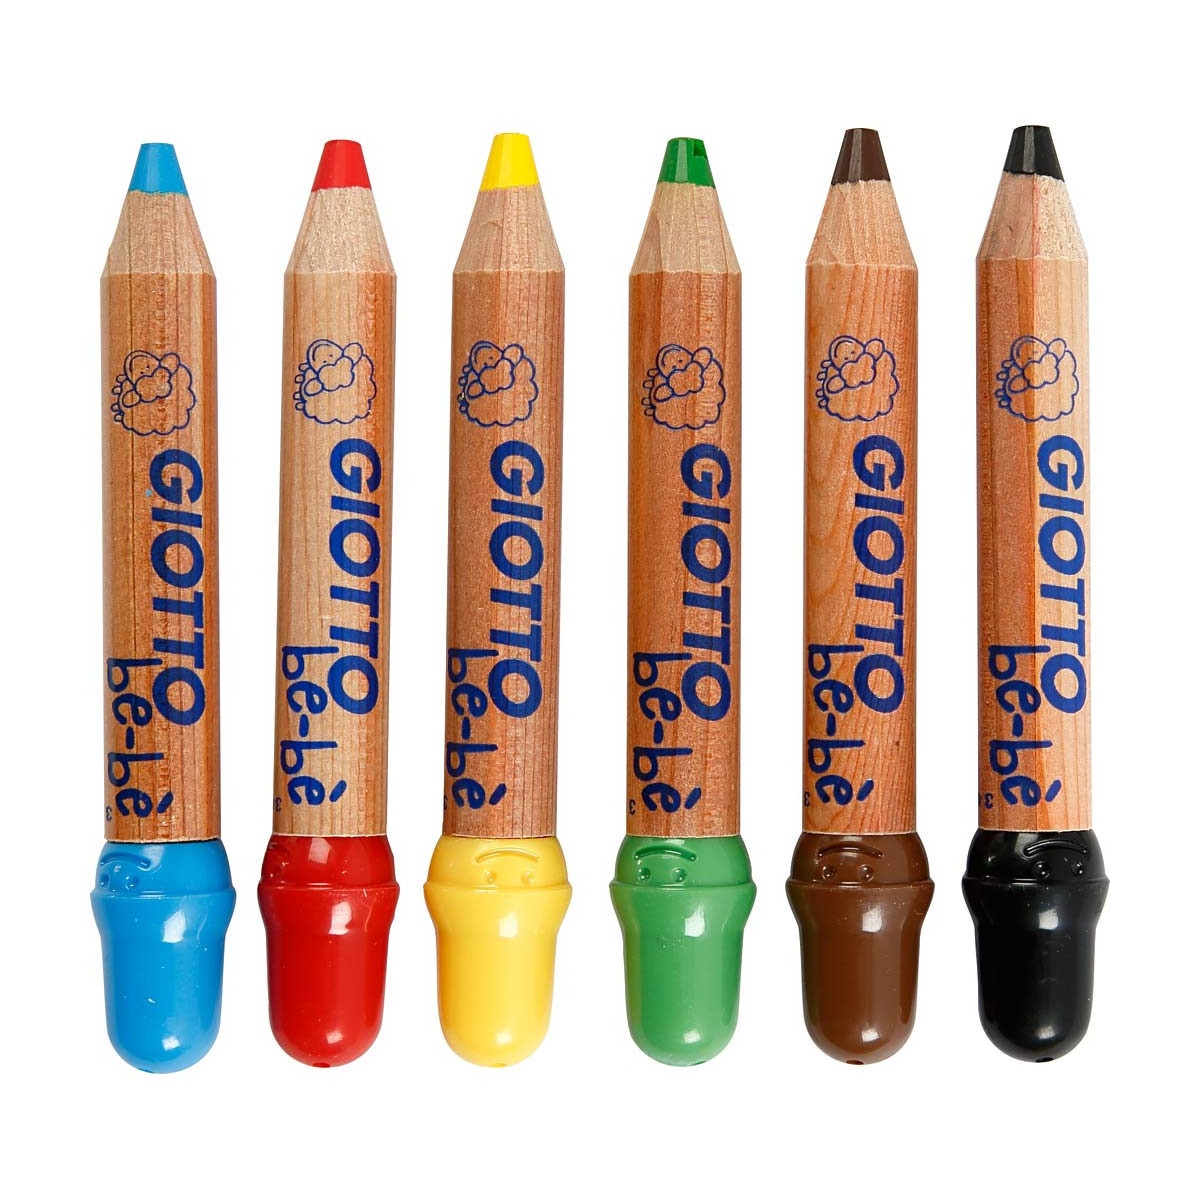 Crayons de couleur Be-bè (+2 ans) Lot de 6 dans le groupe Kids / Crayons pours les enfants / Crayons de couleurs pour les enfants chez Pen Store (101596)